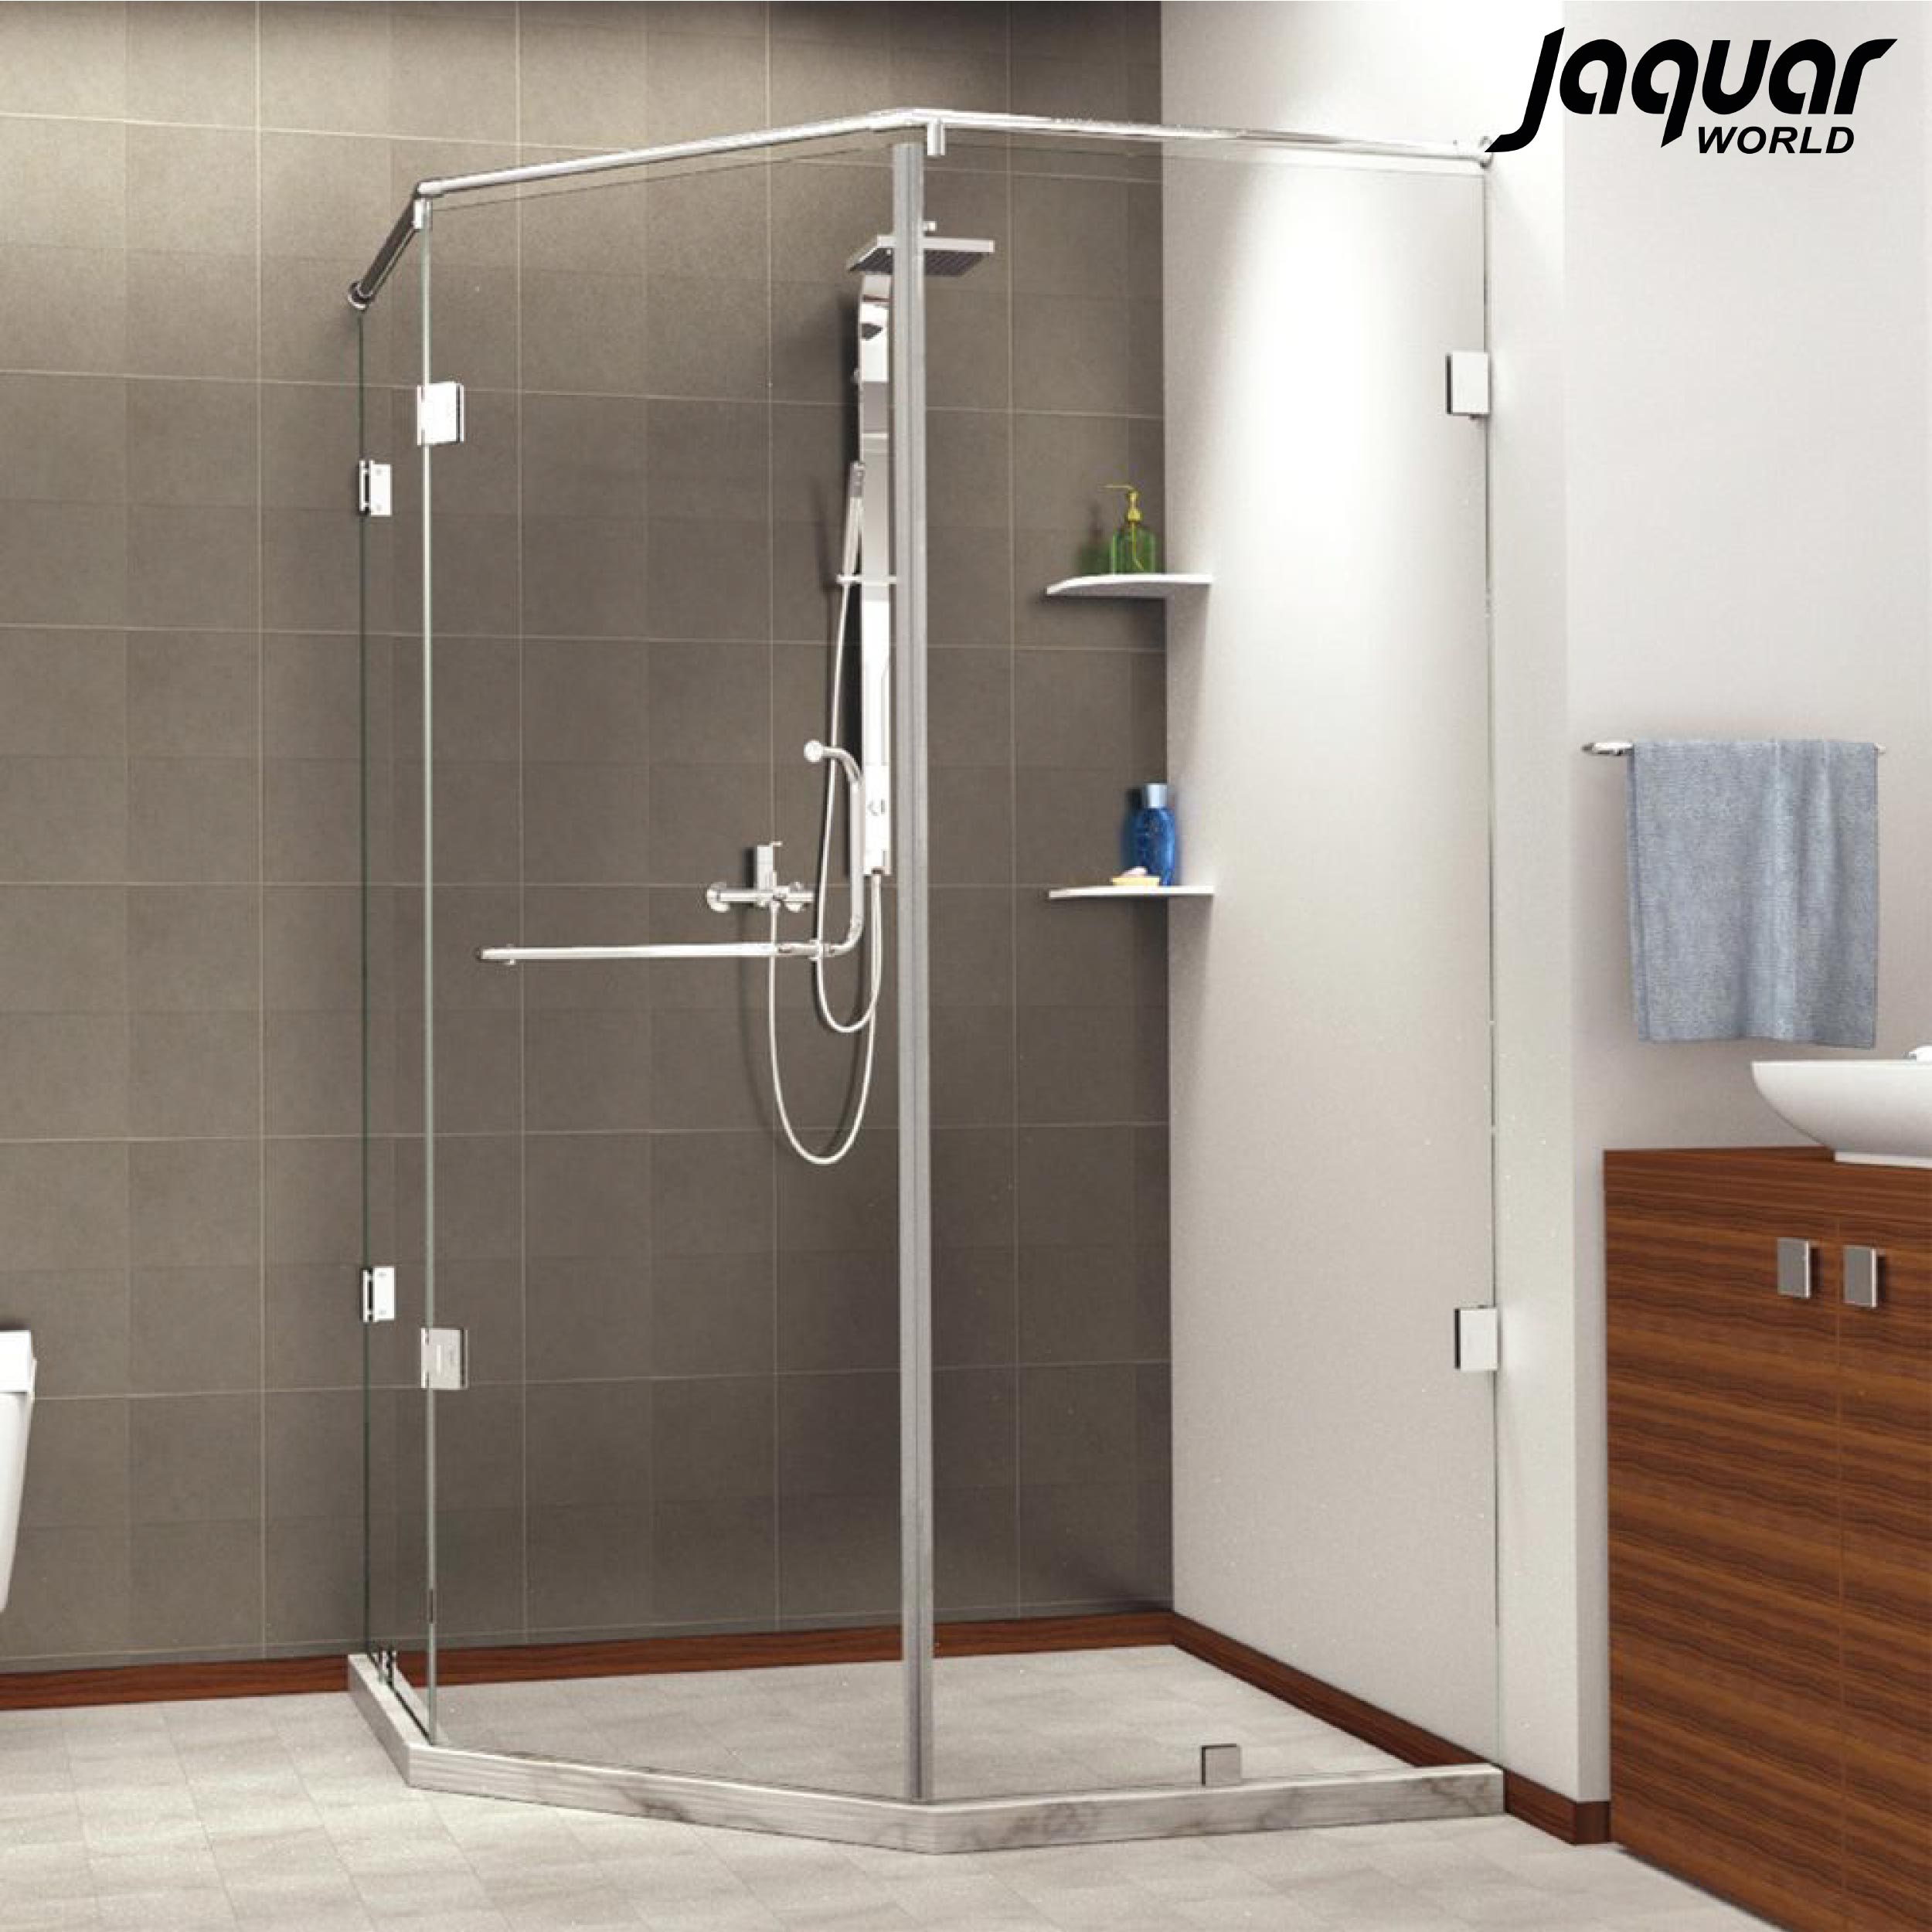 Jaquar shower